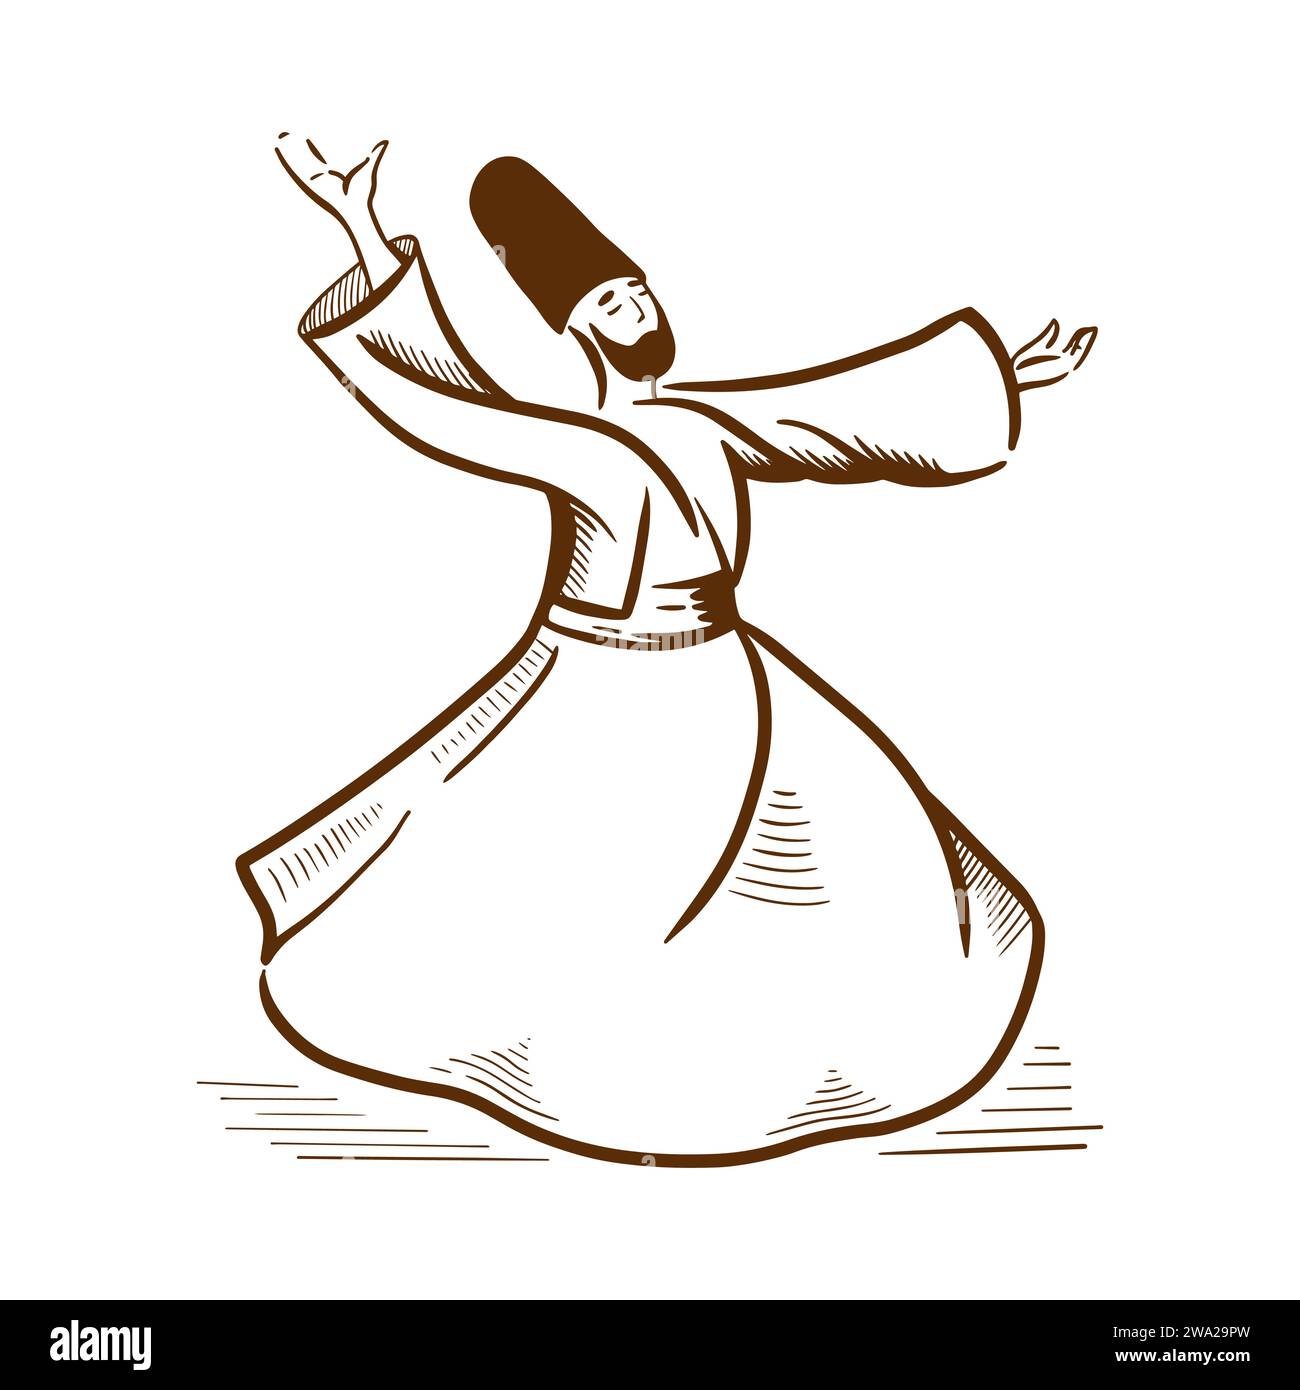 Dessin d'esquisse du symbole culturel dansant derviche de la Turquie. Design de bannière d'attractions touristiques turques. Illustration de Vecteur